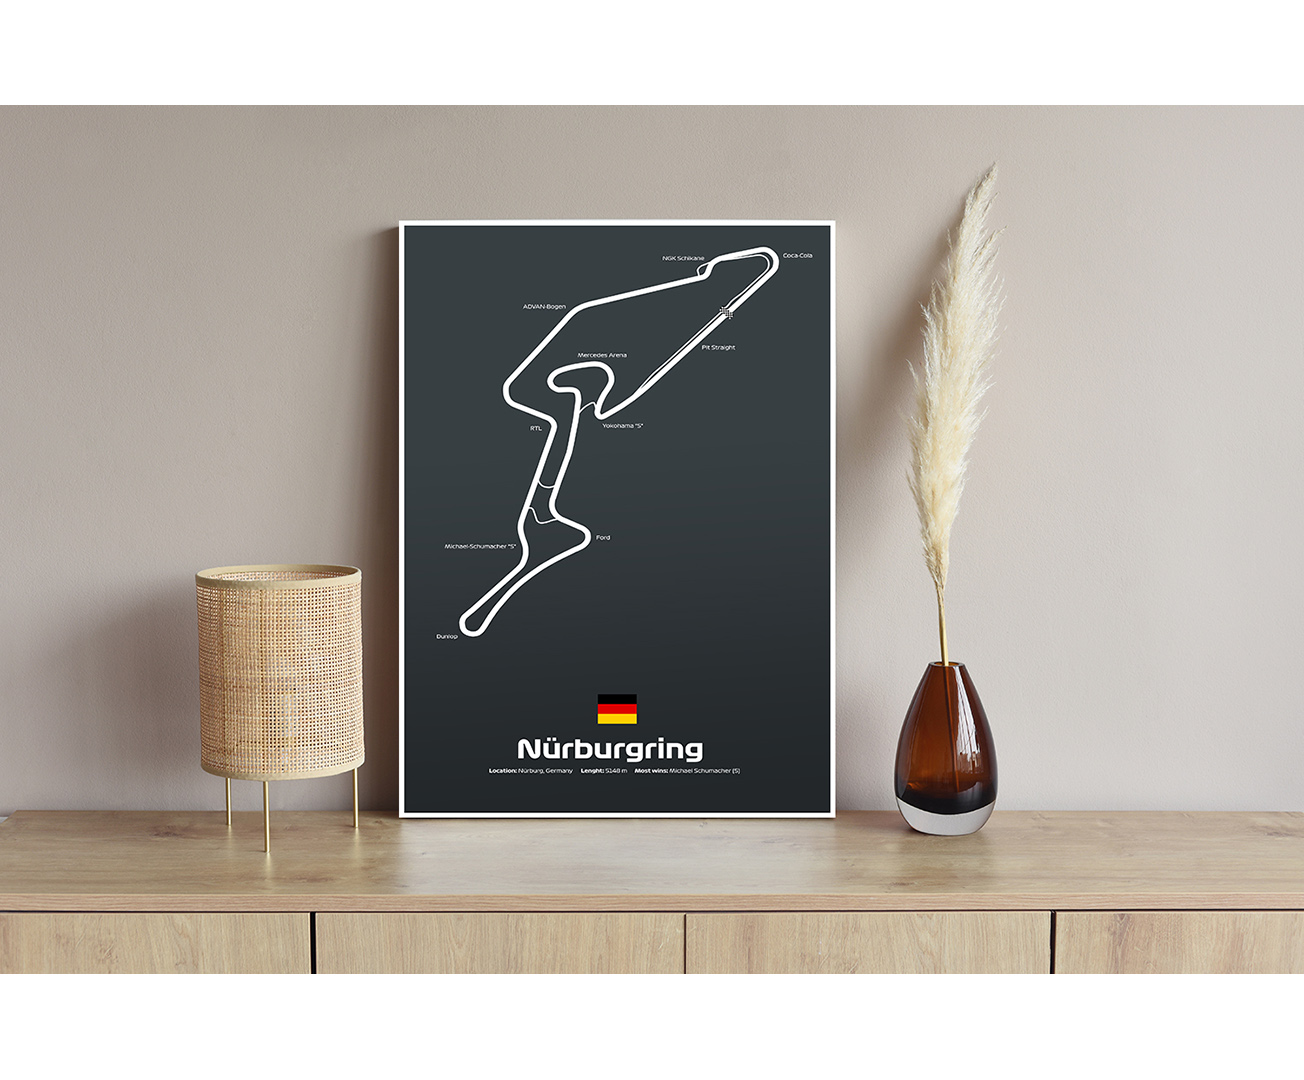 Nurburgring - Okruh F1 v Nemecku